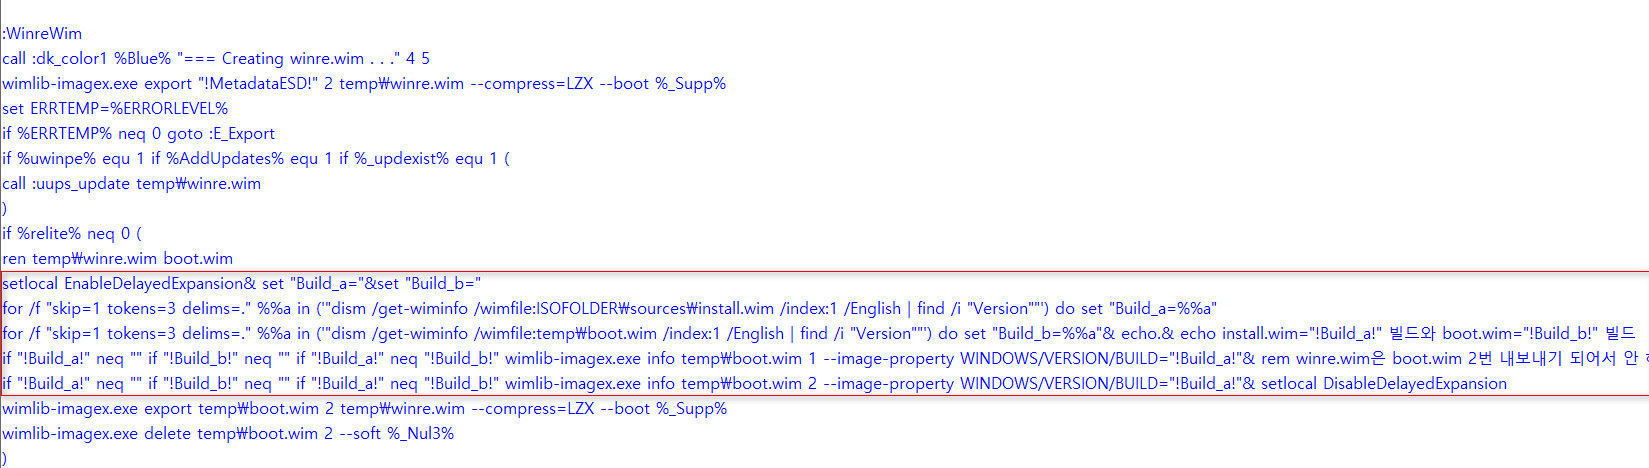 convert-UUP.cmd로 업데이트 통합할 때 boot.wim과 winre.wim의 빌드 앞번호를 install.wim에 맞추기 - boot.wim 1번과 2번만 작업합니다. winre.wim은 boot.wim 2번이 추출되어서 안 해도 됩니다. 그리고 boot.wim 2번은 바로 삭제되는데, 나중에 만들어집니다 2024-03-29_104057.jpg